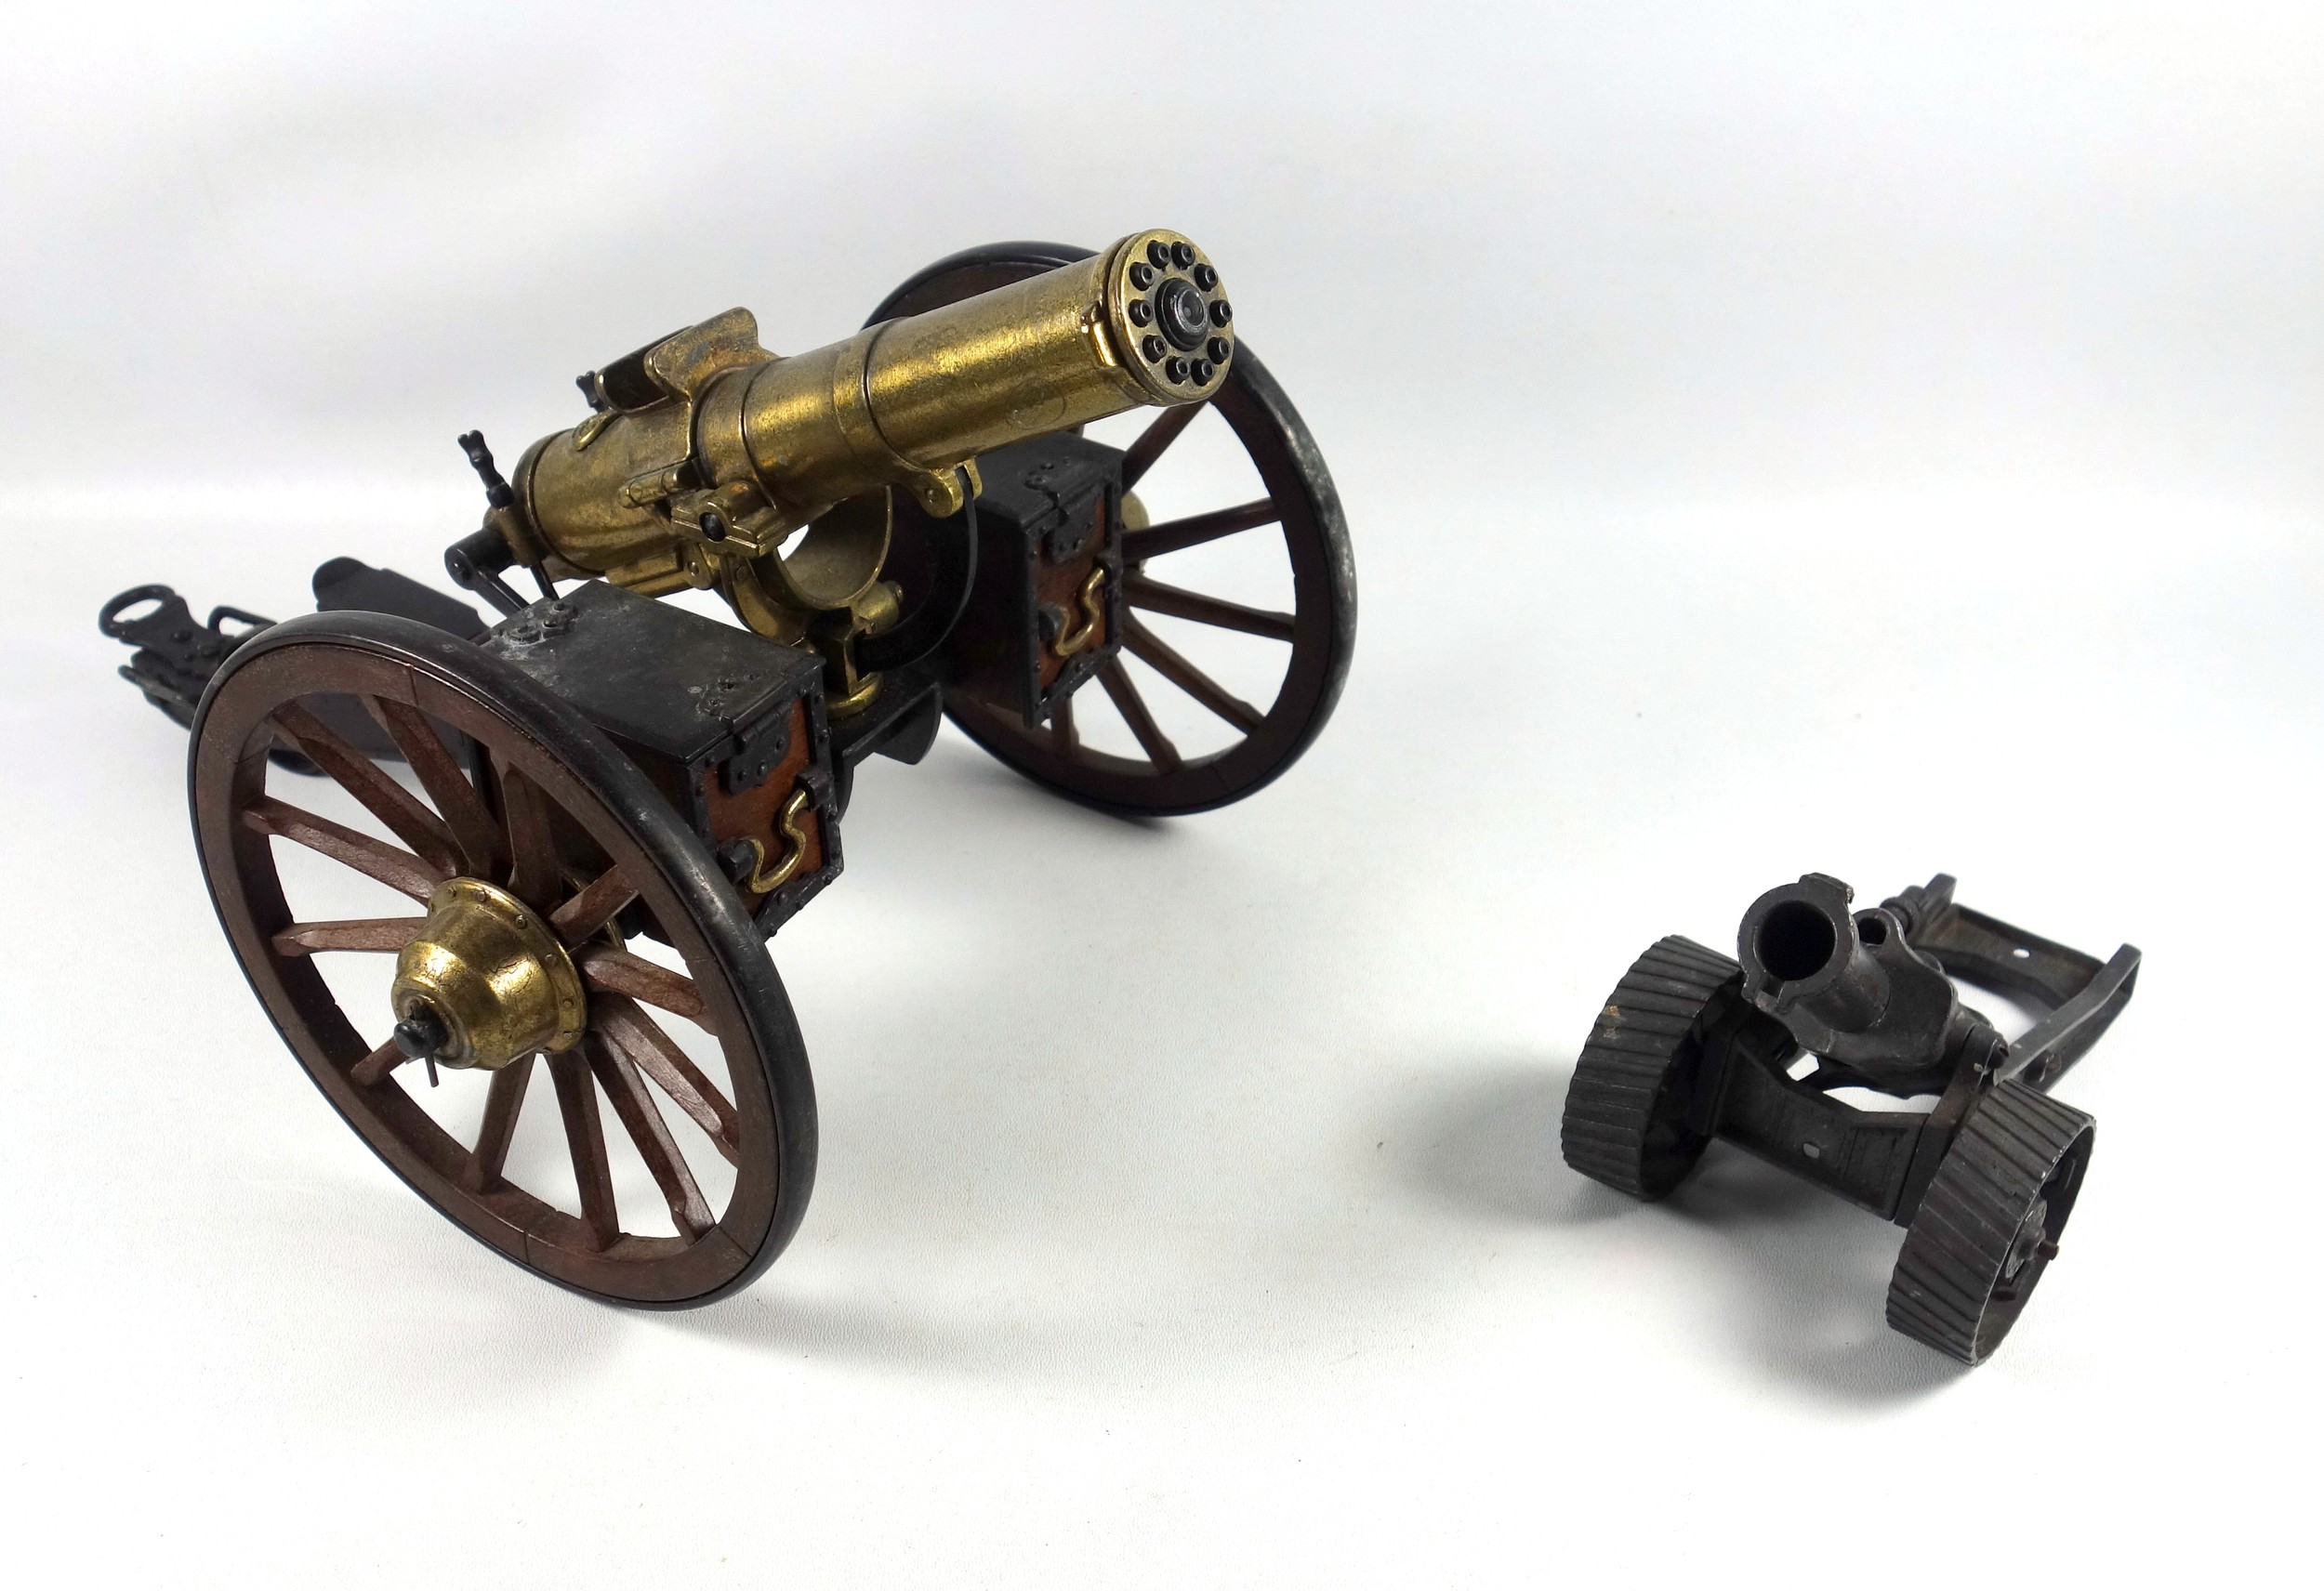 Desktop model of a Gatling field gun, the brass barrel with turning mechanism mimicking firing